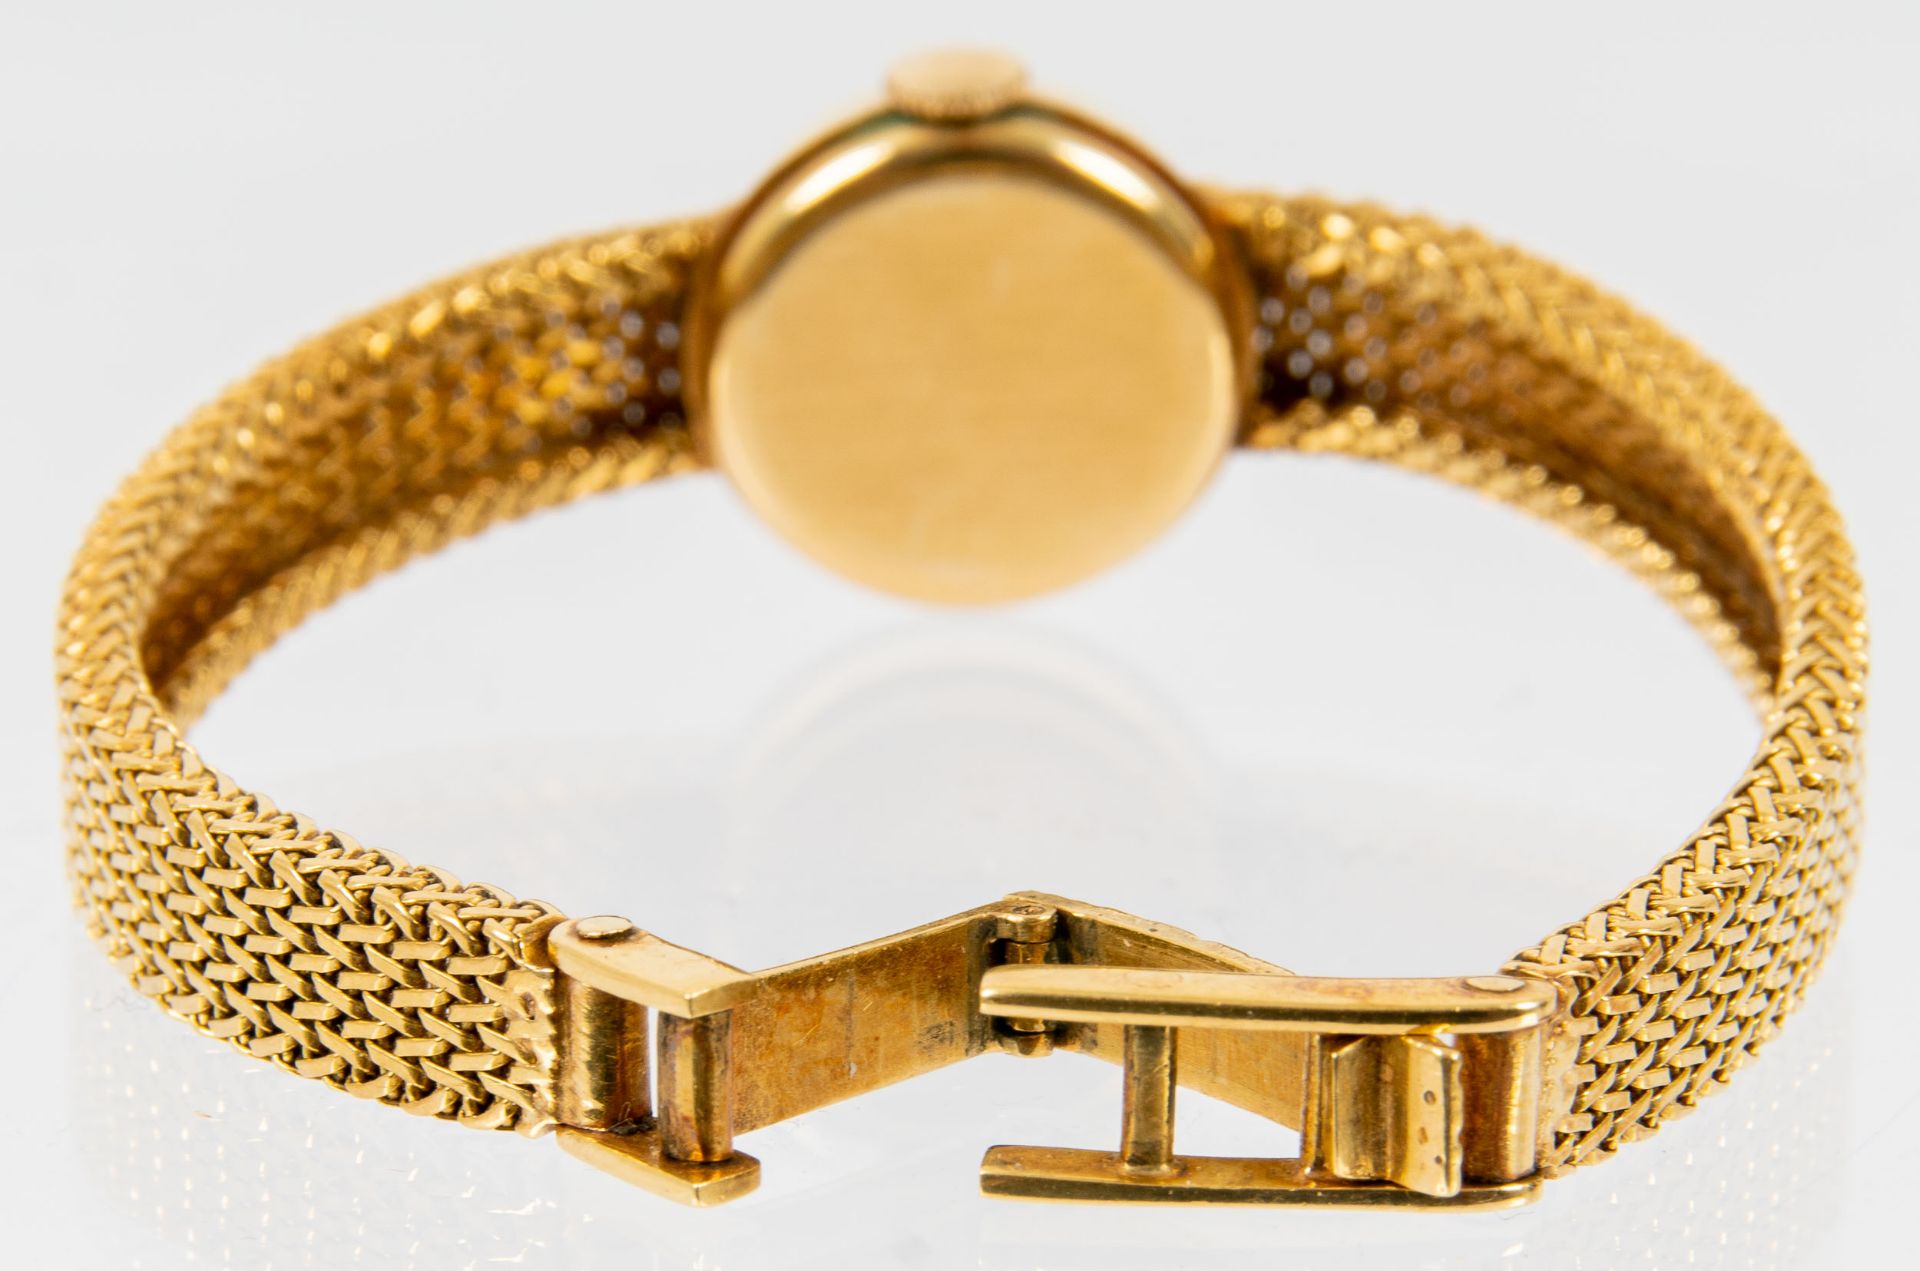 Klassische Damenarmbanduhr der Marke "KURZ-SWISS", Gehäuse und Armband in 750er Gelbgold, Werk läuf - Image 6 of 9